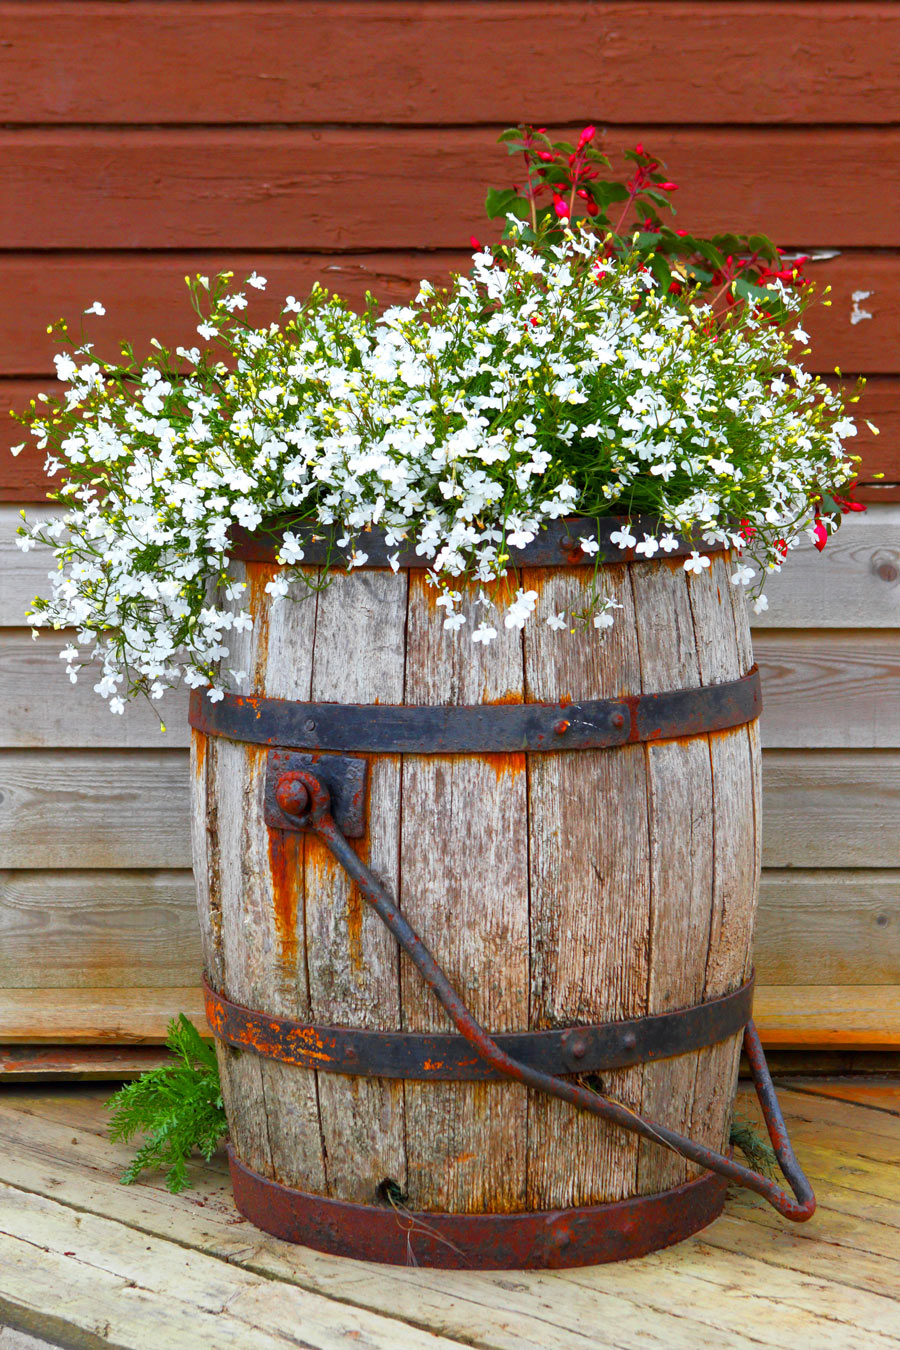 Vecchia botte decorata con fiori bianchi, una bella idea fai da te per il giardino.